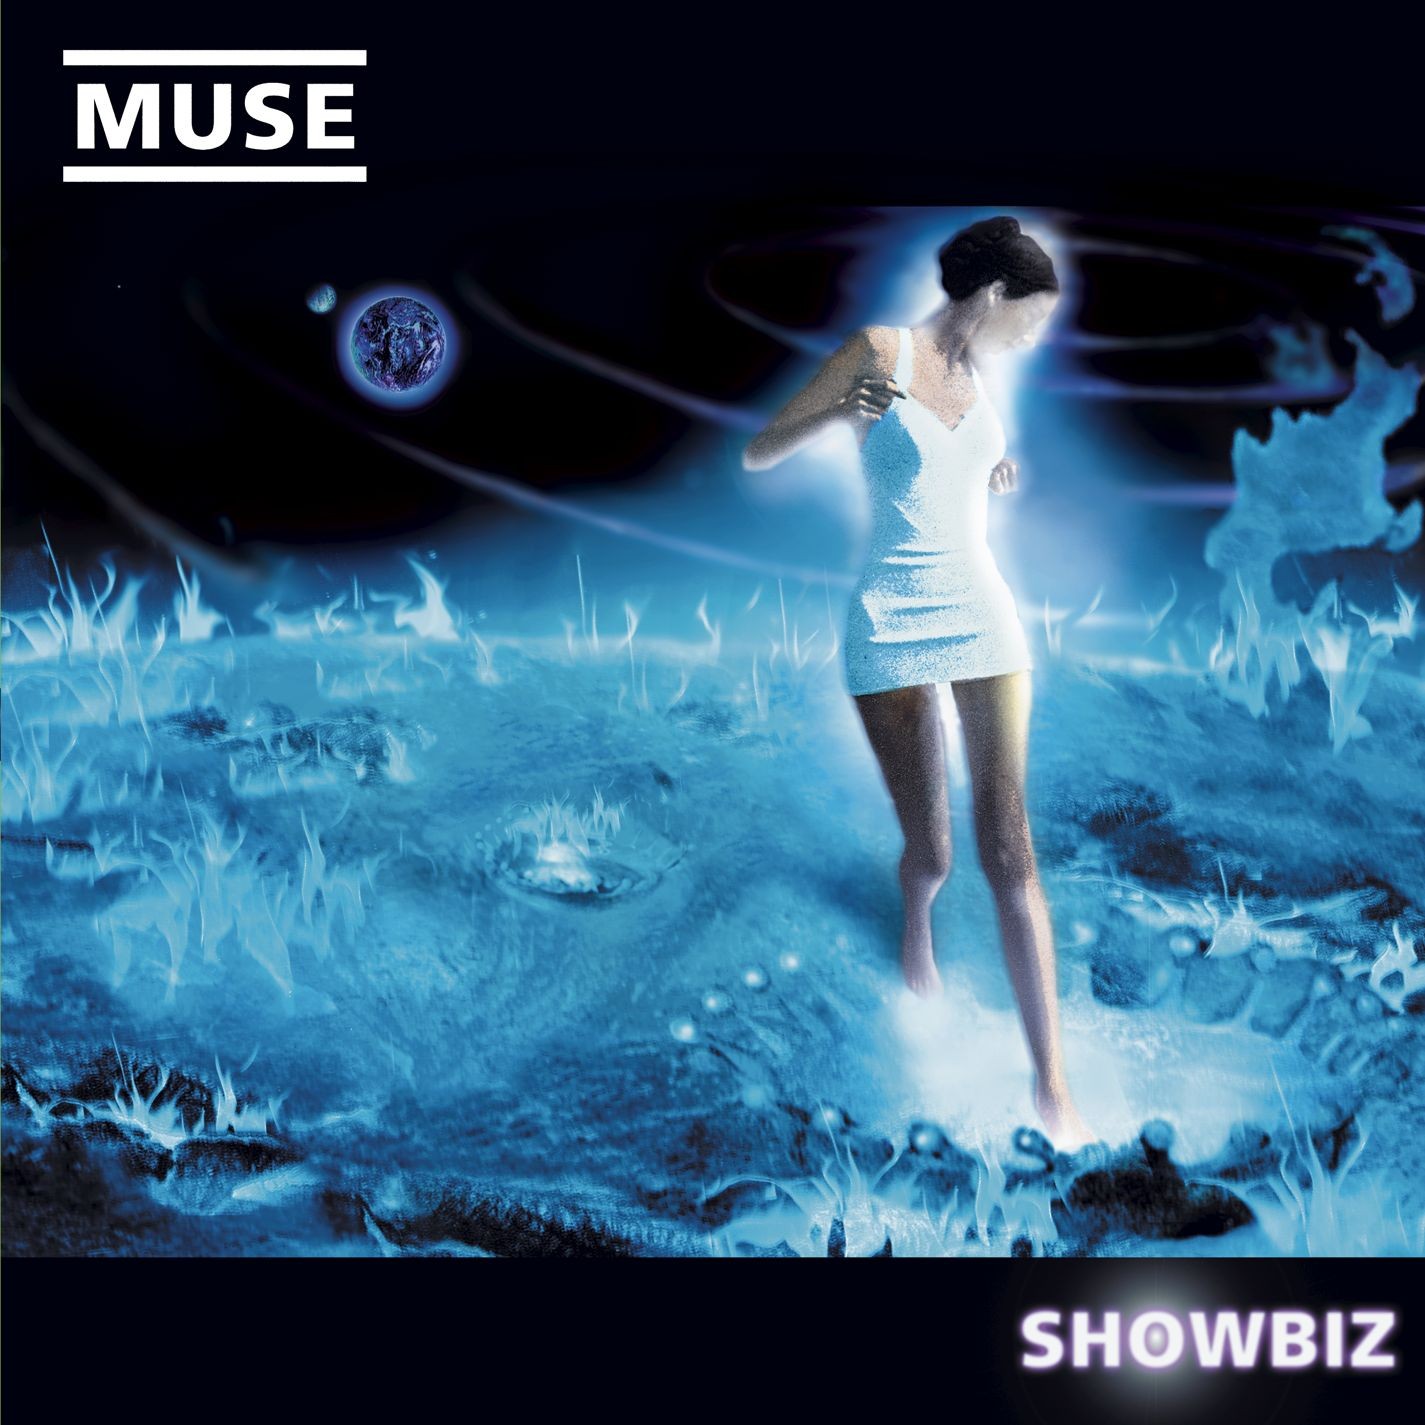 Muse - Showbiz (1999/2015) [HDTracks FLAC 24bit/96kHz]